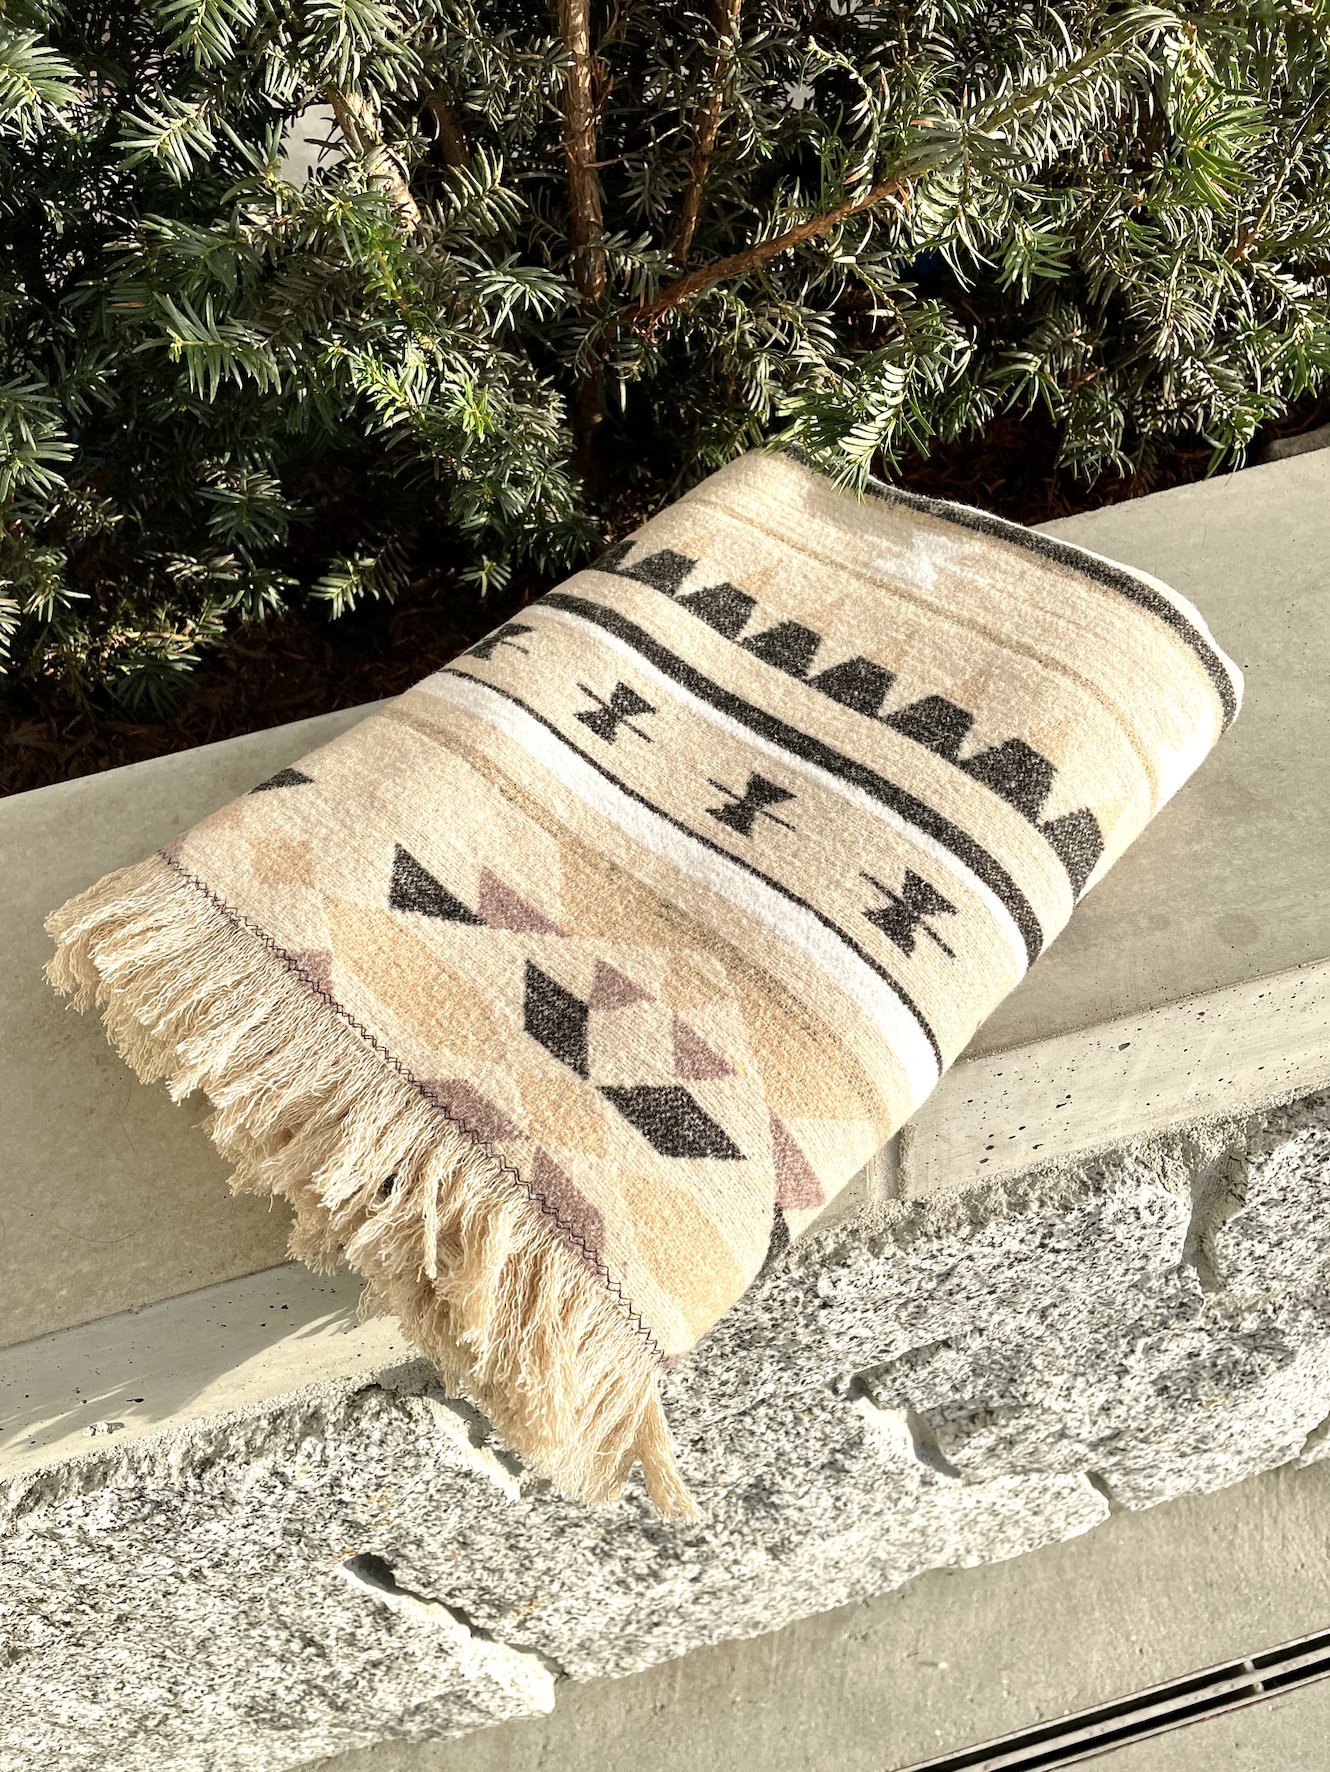 west coast alchemist handmade blankets baskets in abbotsford fraser valley british columbia canada 27